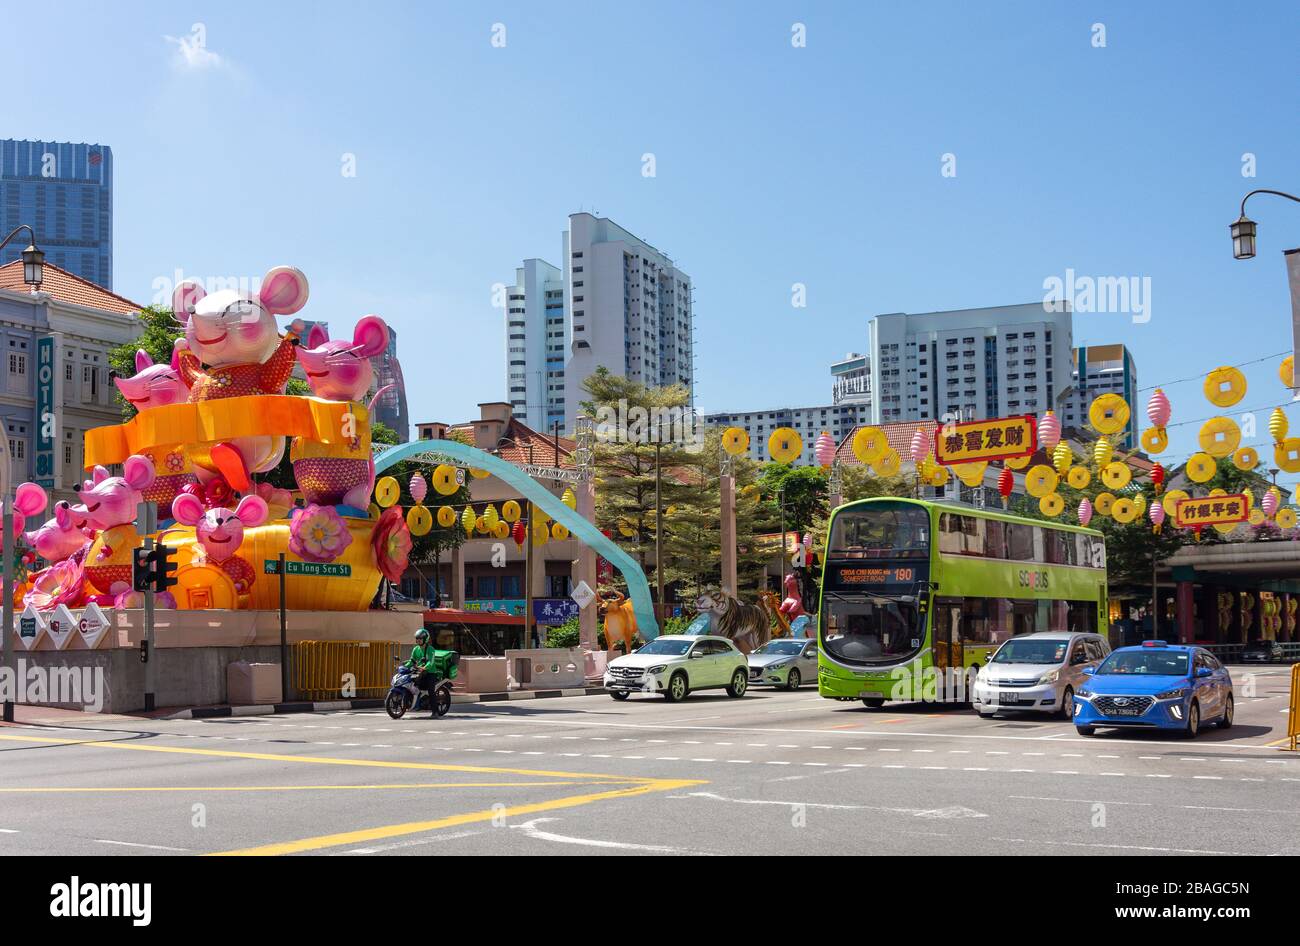 Décorations du nouvel an chinois, eu Tong Sen Street, Chinatown, République de Singapour Banque D'Images